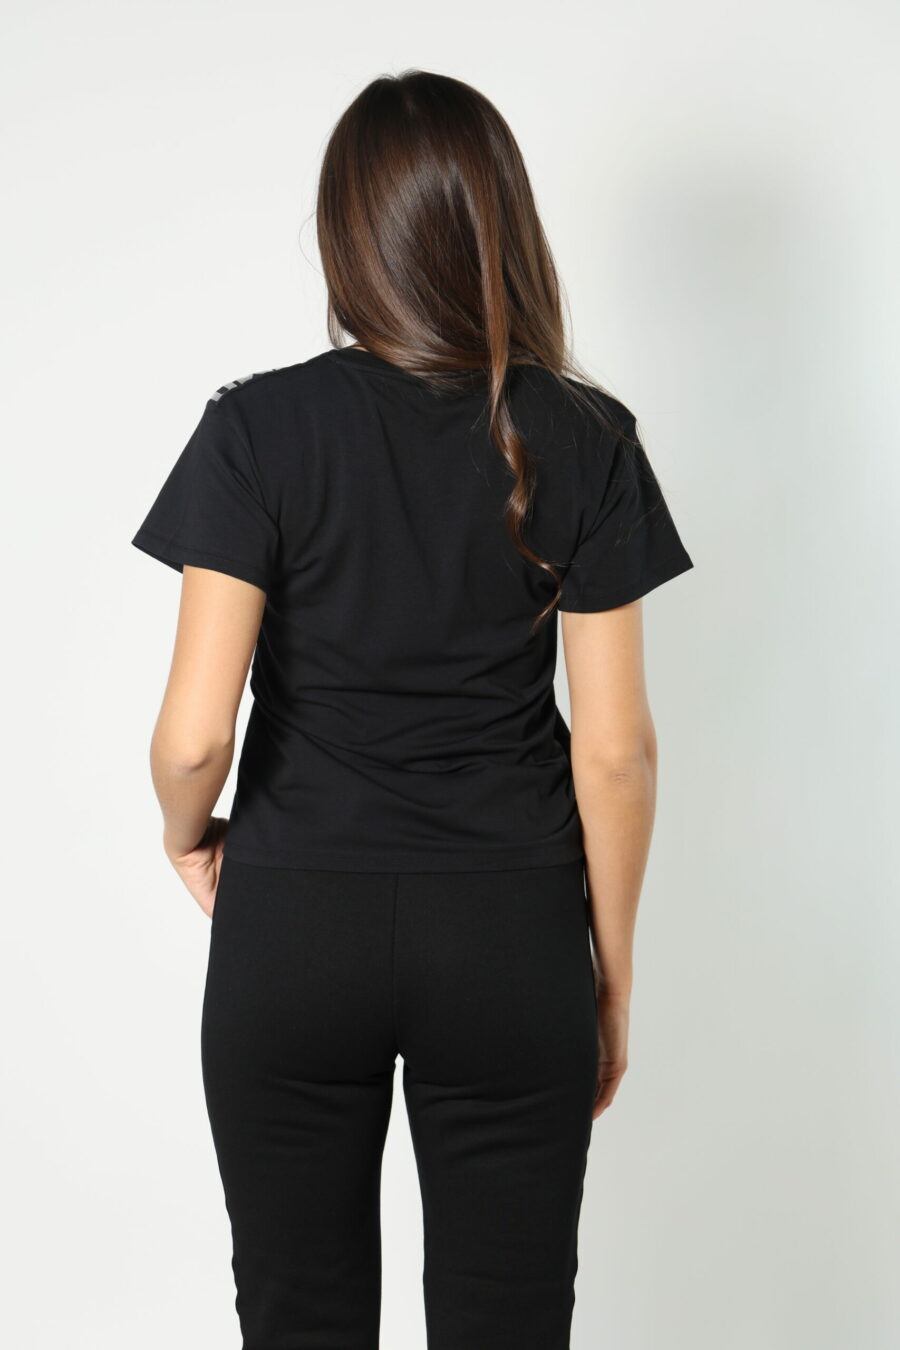 Camiseta negra con cuello en "v" y logo en cinta monocromático - 8052865435499 460 scaled